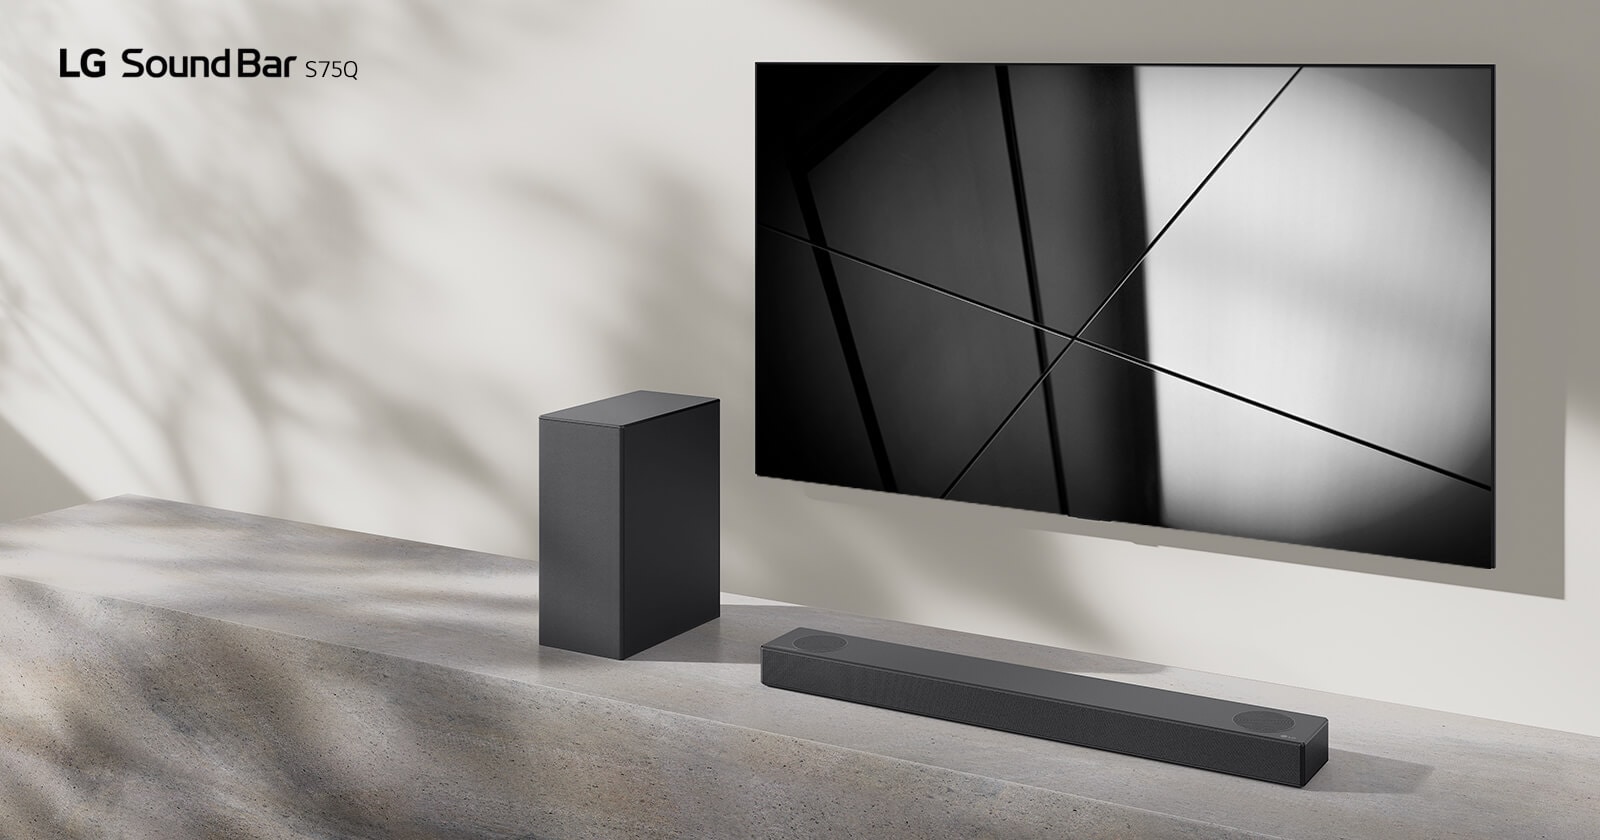 La barra de sonido LG S75Q y el televisor LG se colocan juntos en la sala de estar. El televisor está encendido y muestra una imagen en blanco y negro.